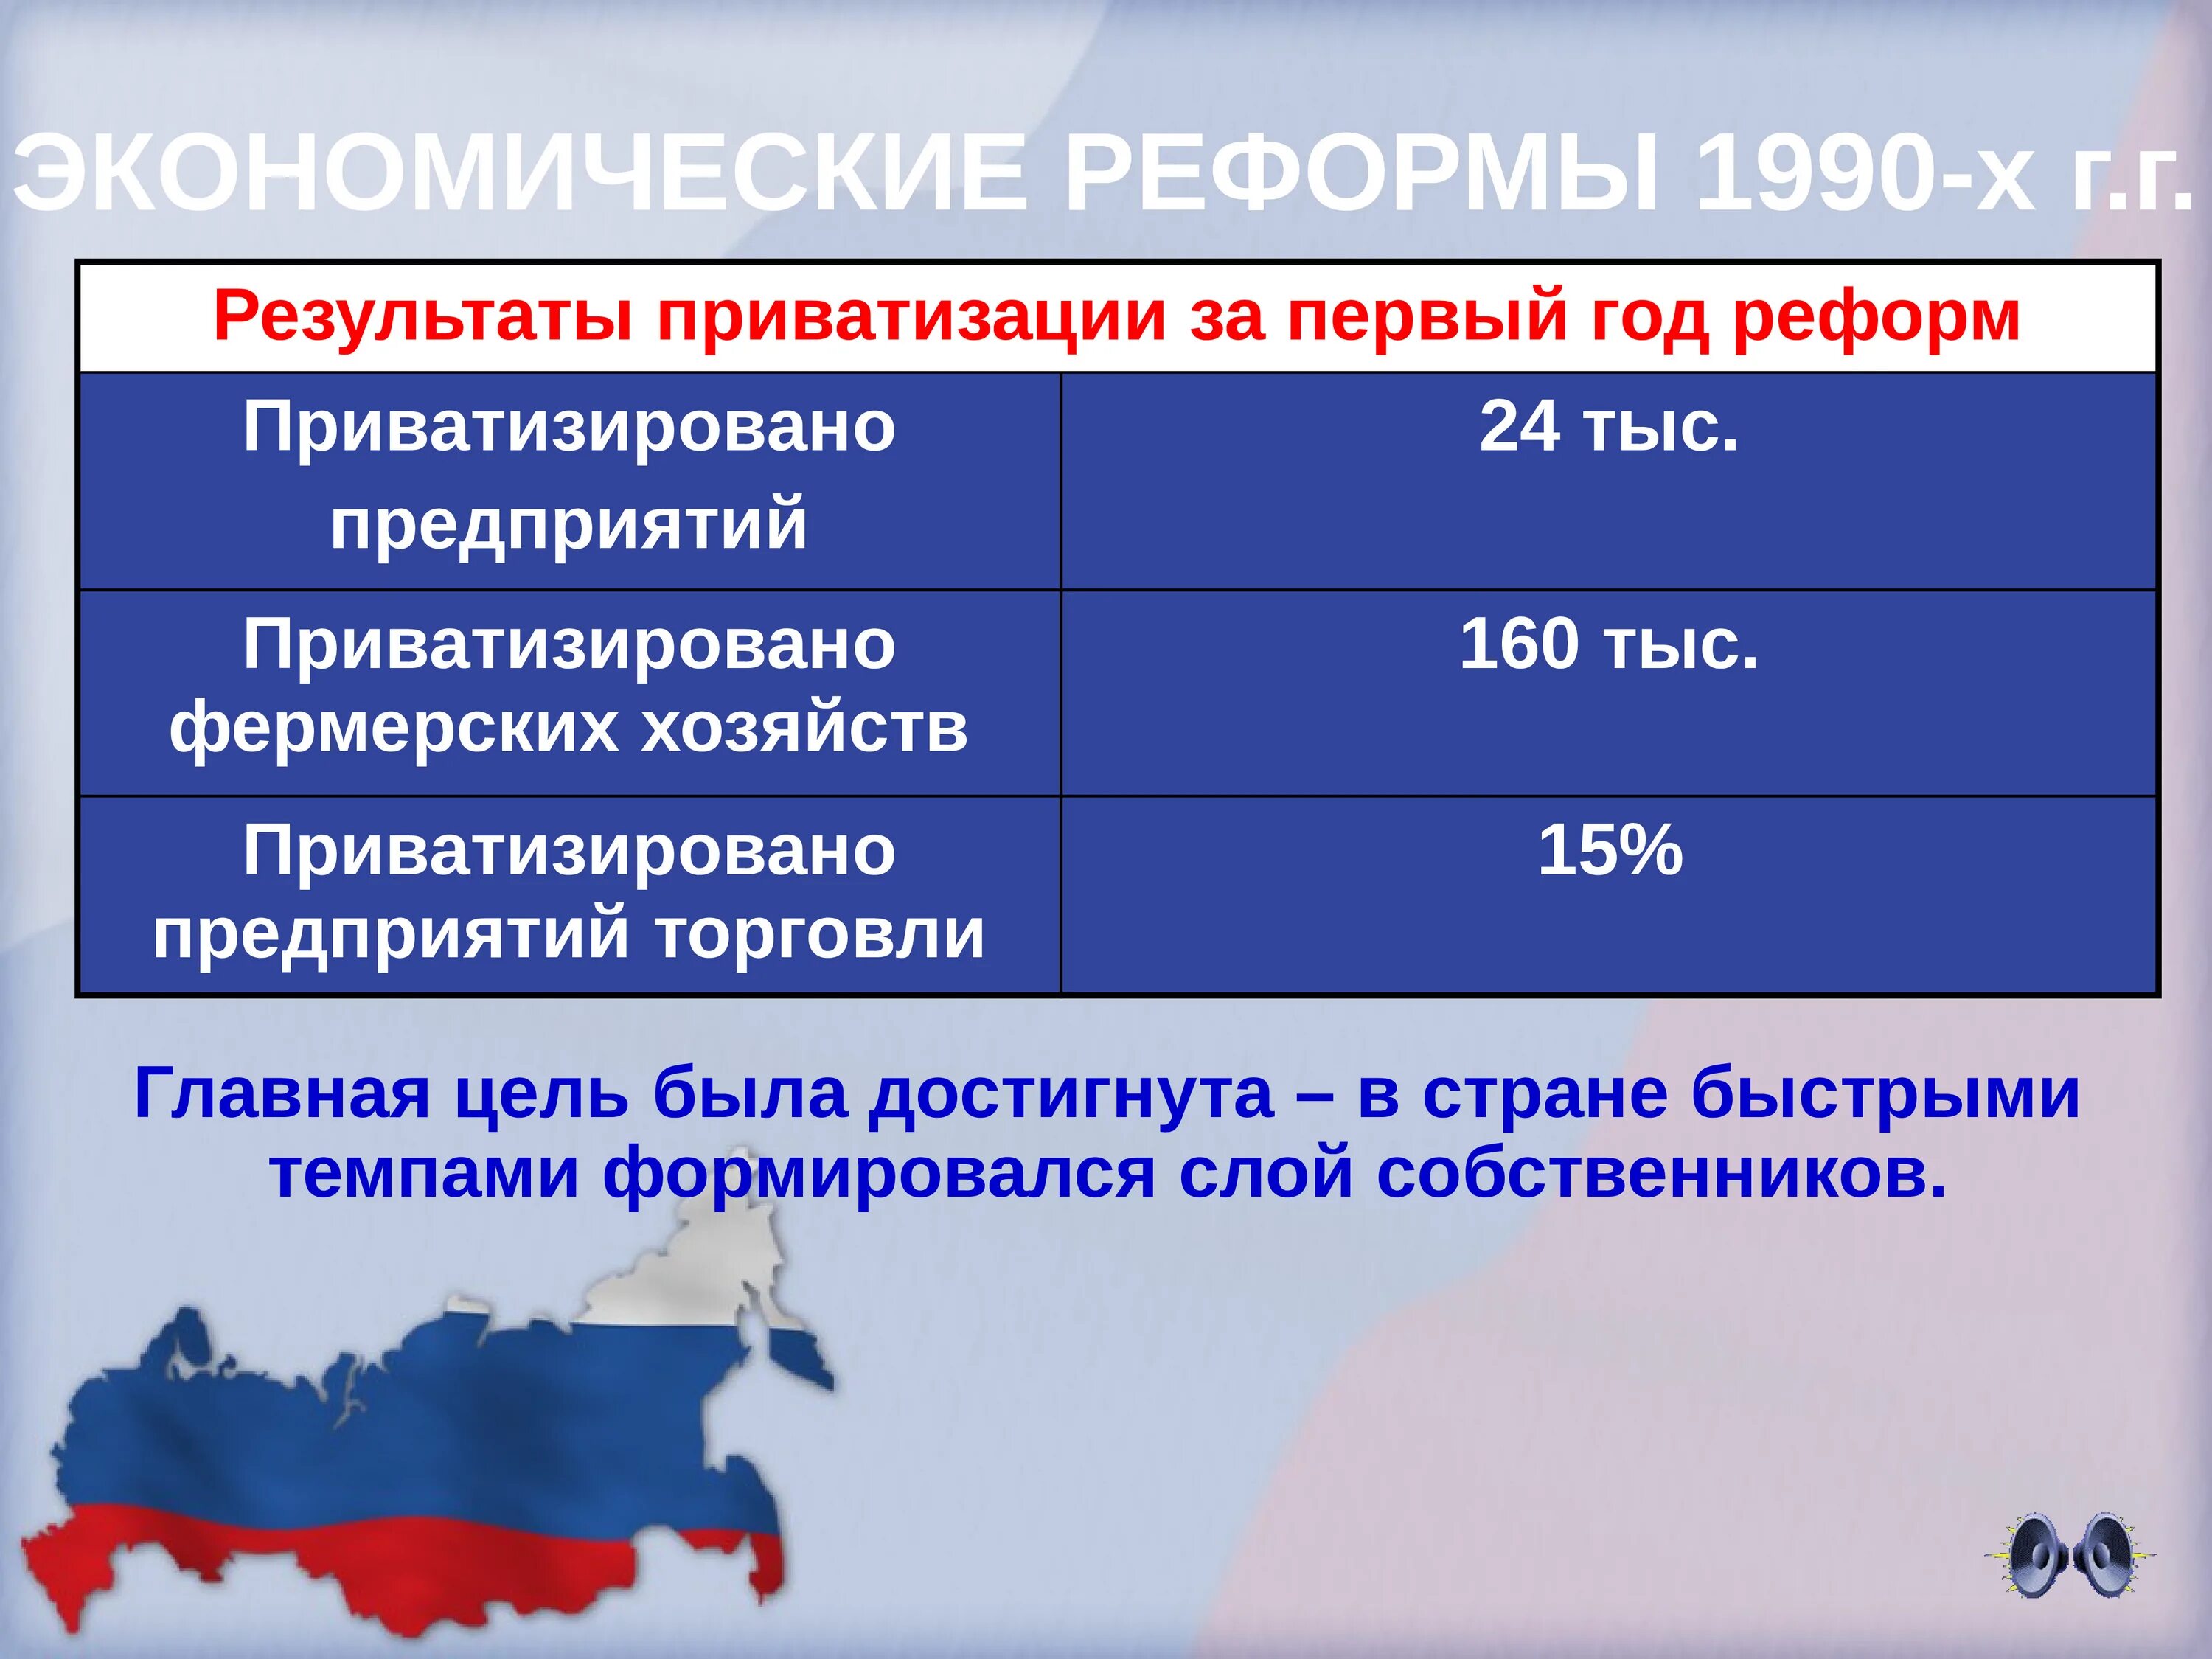 Экономические реформы 1990-х гг.. Экономические преобразования 1990-х годов.. Результаты экономических реформ 1990-х годов в России. Экономическая реформа в России в 1990-х. Результаты экономических преобразований